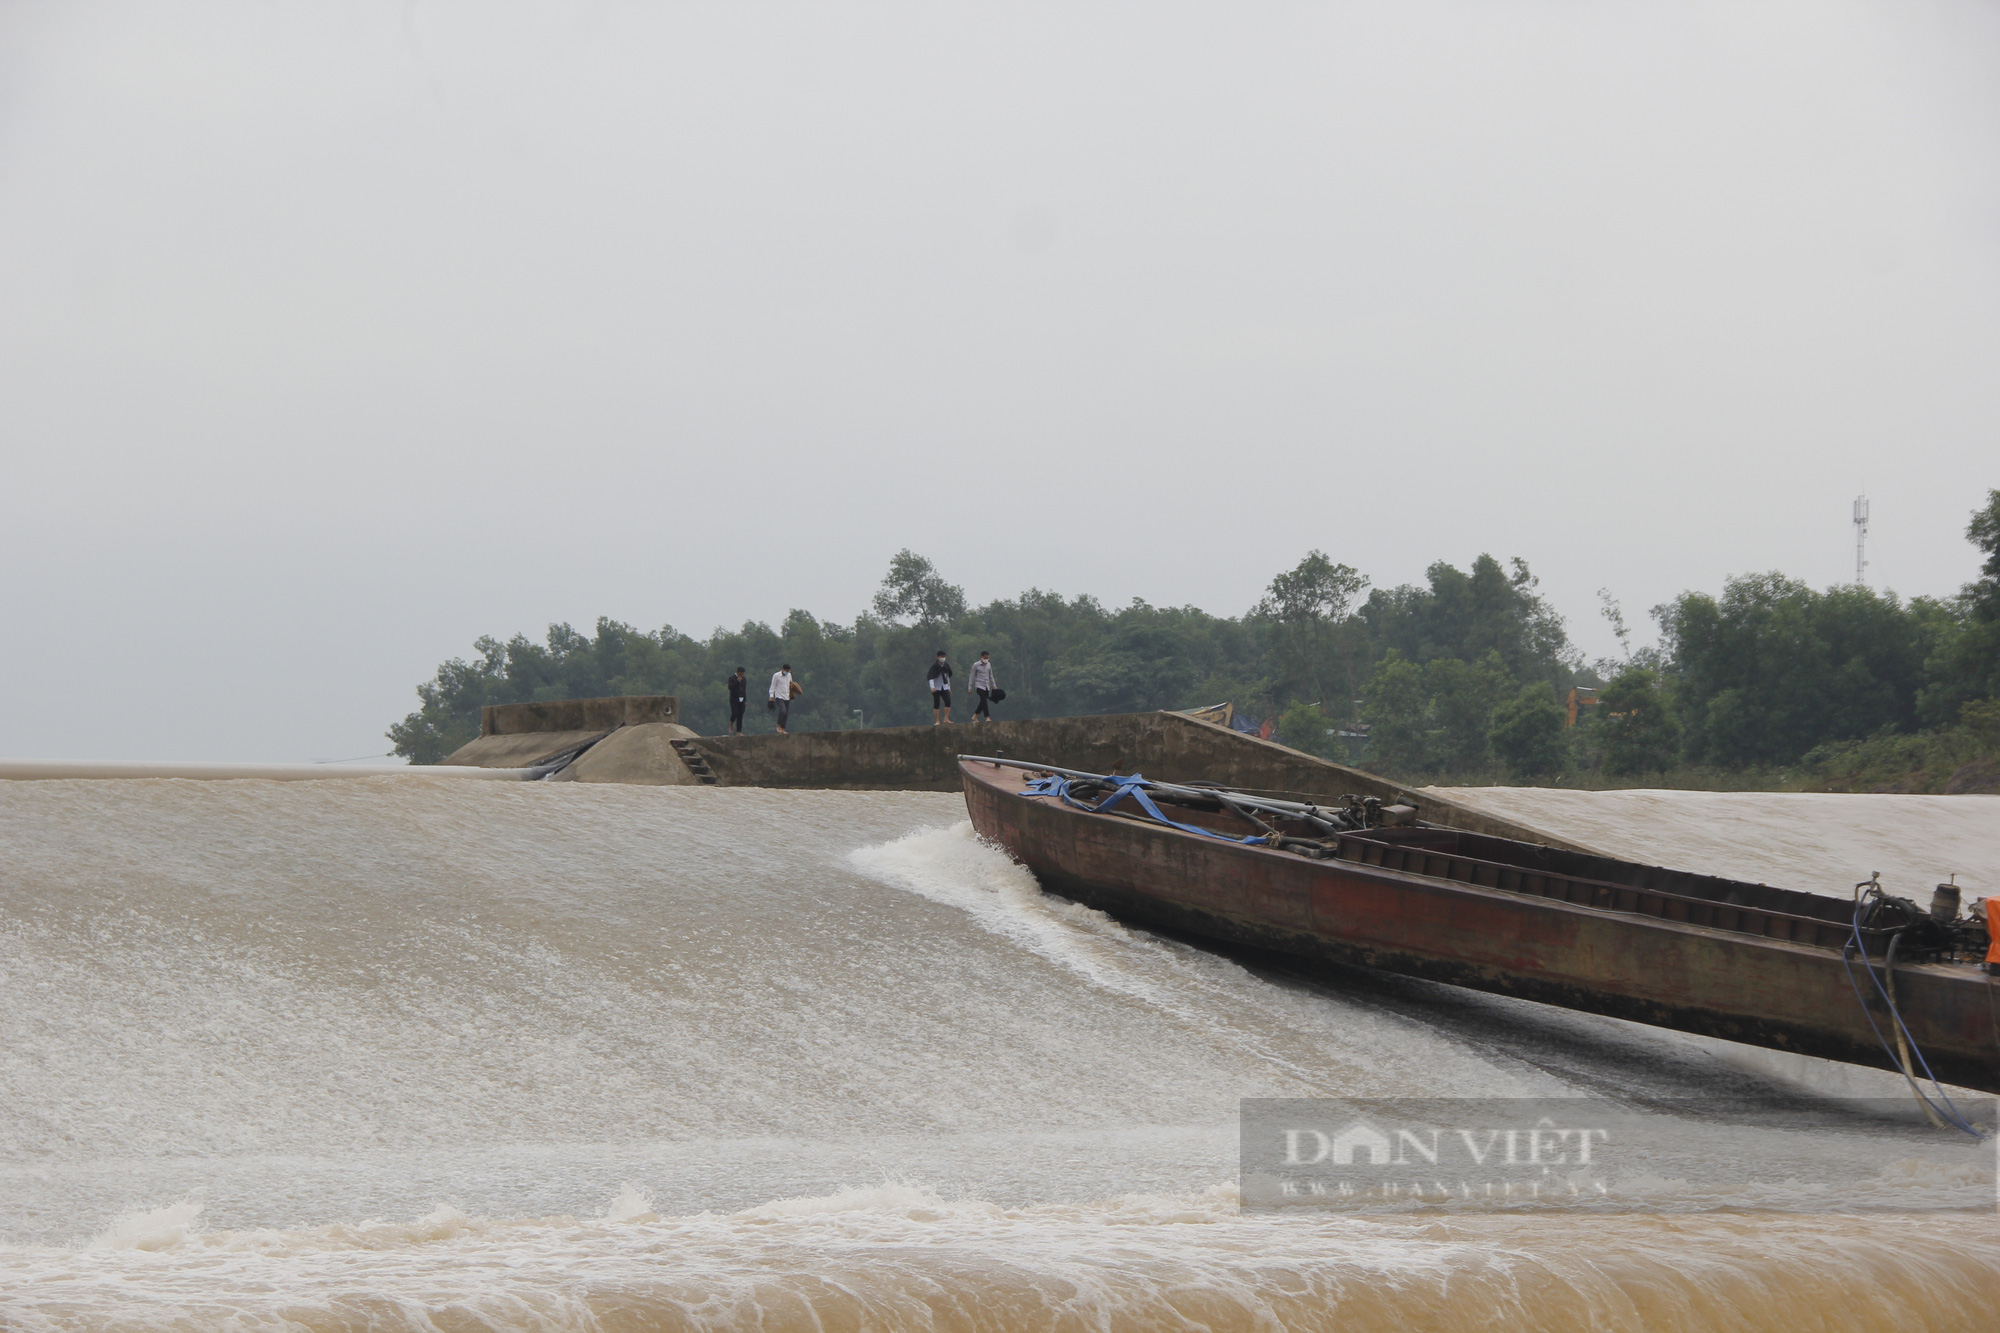 Đoàn cán bộ Sở GTVT tỉnh Quảng Trị gặp nạn trên sông: Công an tỉnh vào cuộc - Ảnh 4.